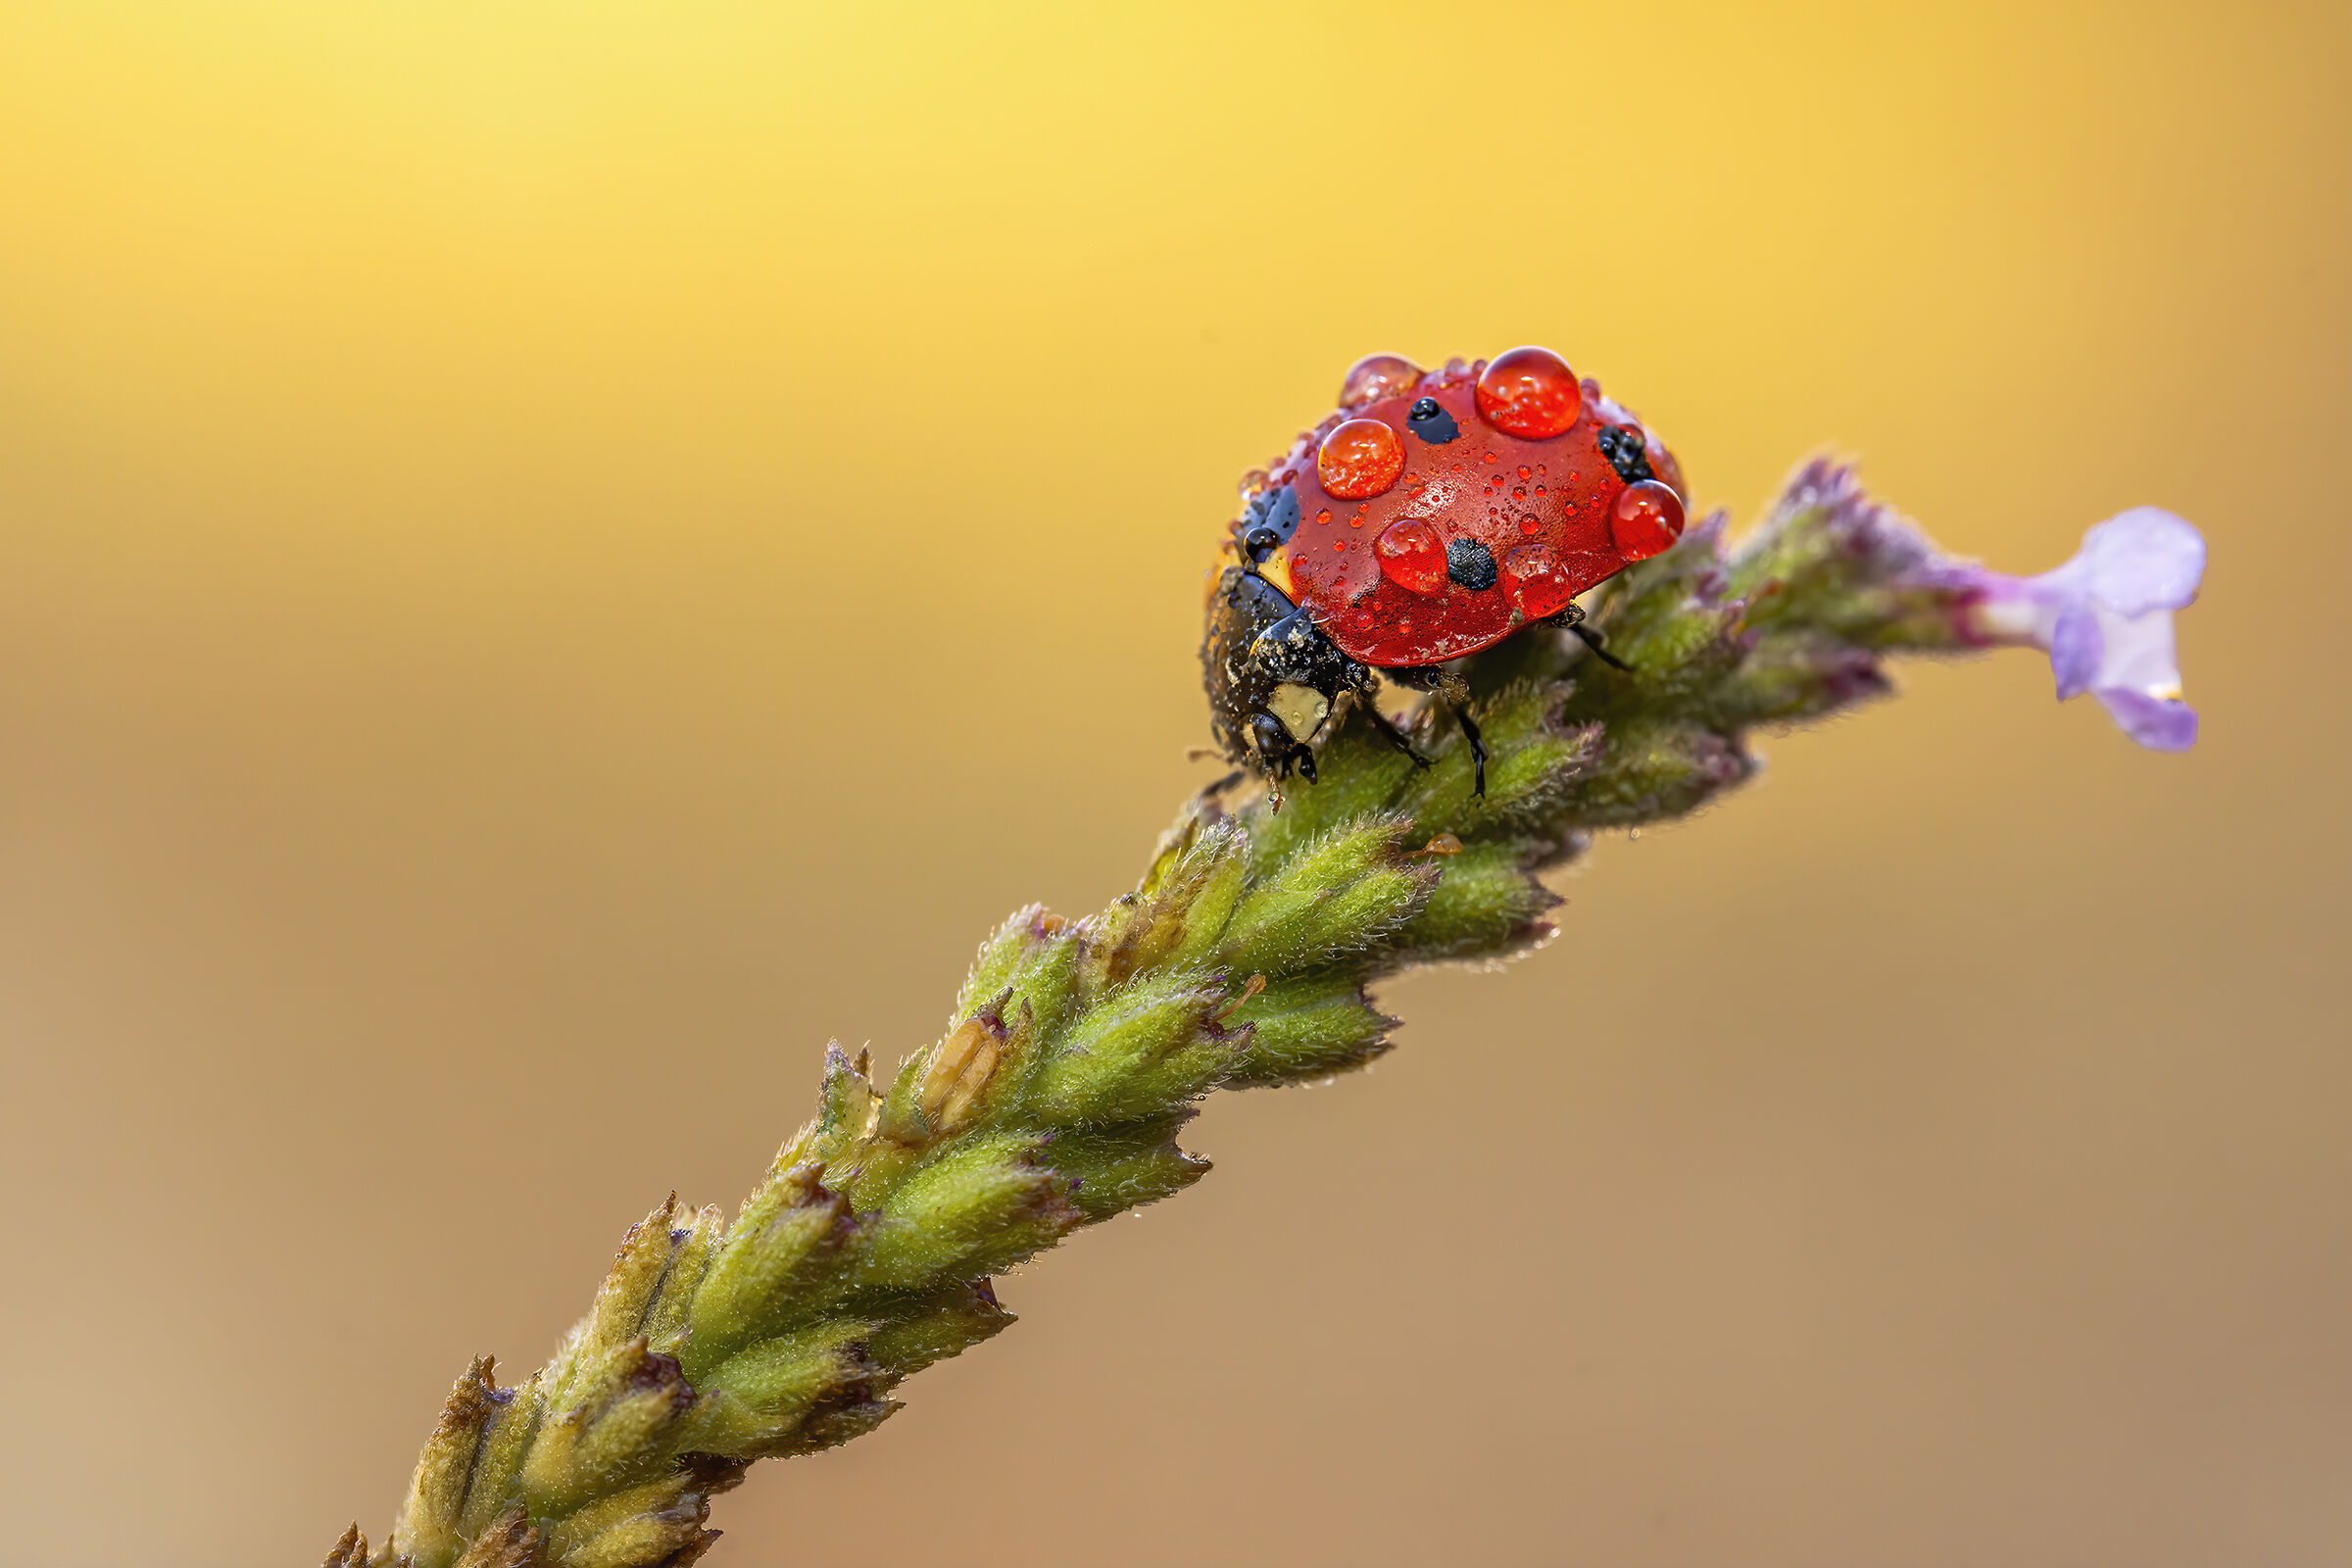 Drops & Ladybug...